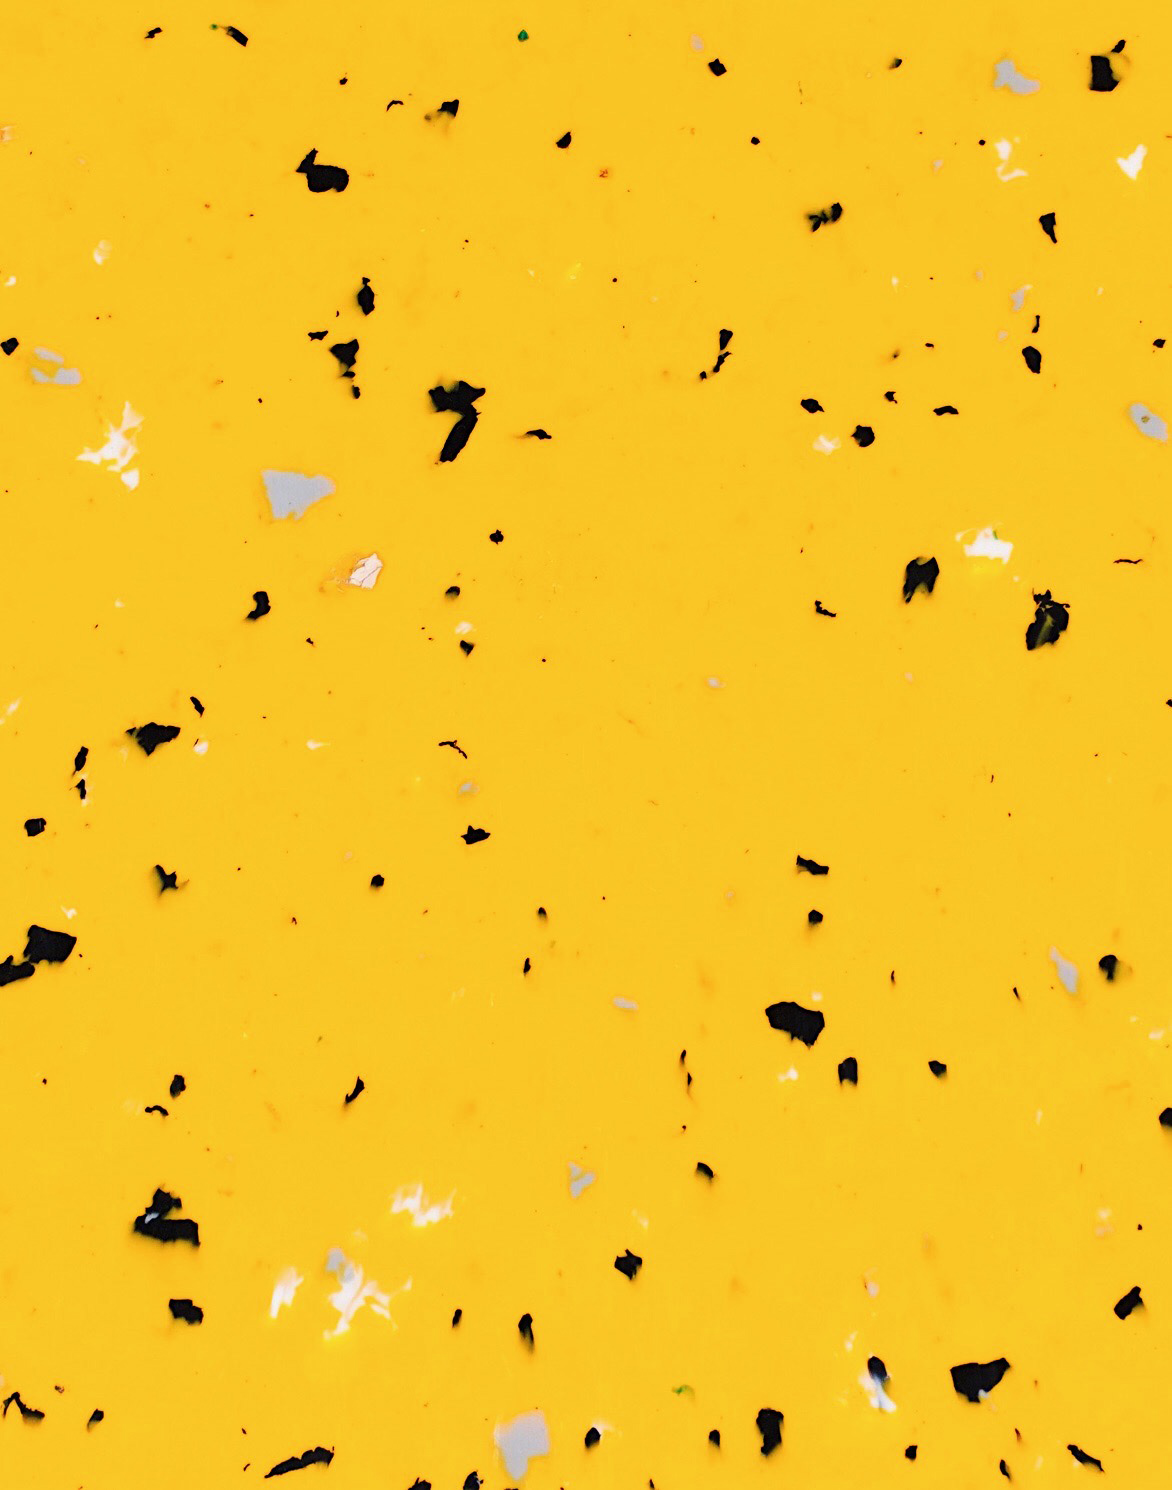 granité jaune avec morceaux noirs en moyenne quantité, quelques gris et quelques blancs